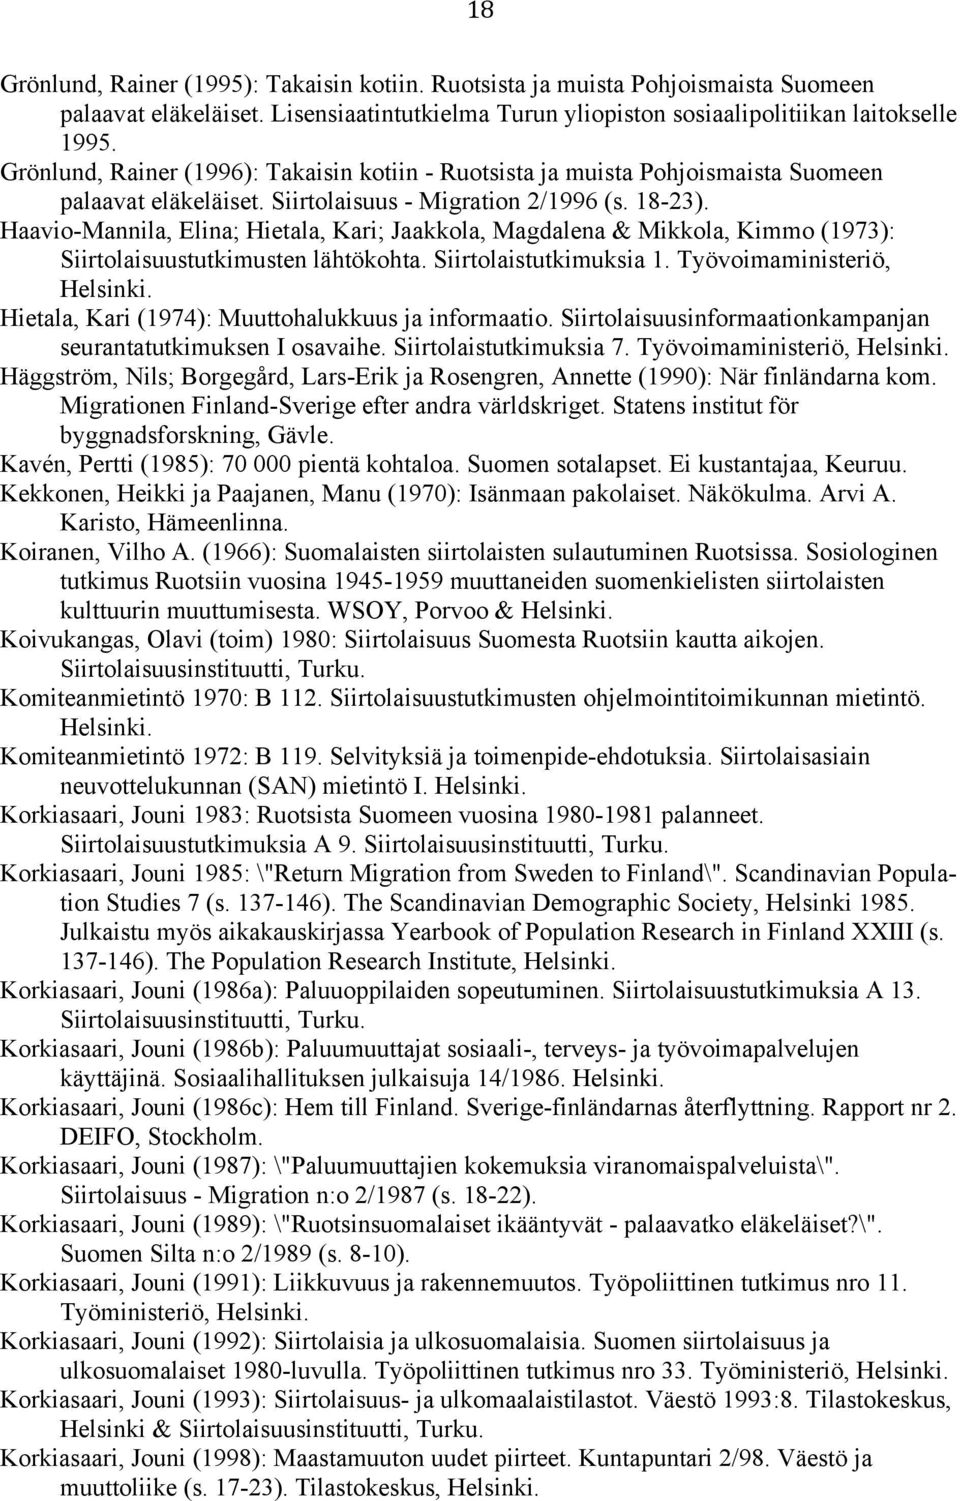 Haavio-Mannila, Elina; Hietala, Kari; Jaakkola, Magdalena & Mikkola, Kimmo (1973): Siirtolaisuustutkimusten lähtökohta. Siirtolaistutkimuksia 1. Työvoimaministeriö, Helsinki.